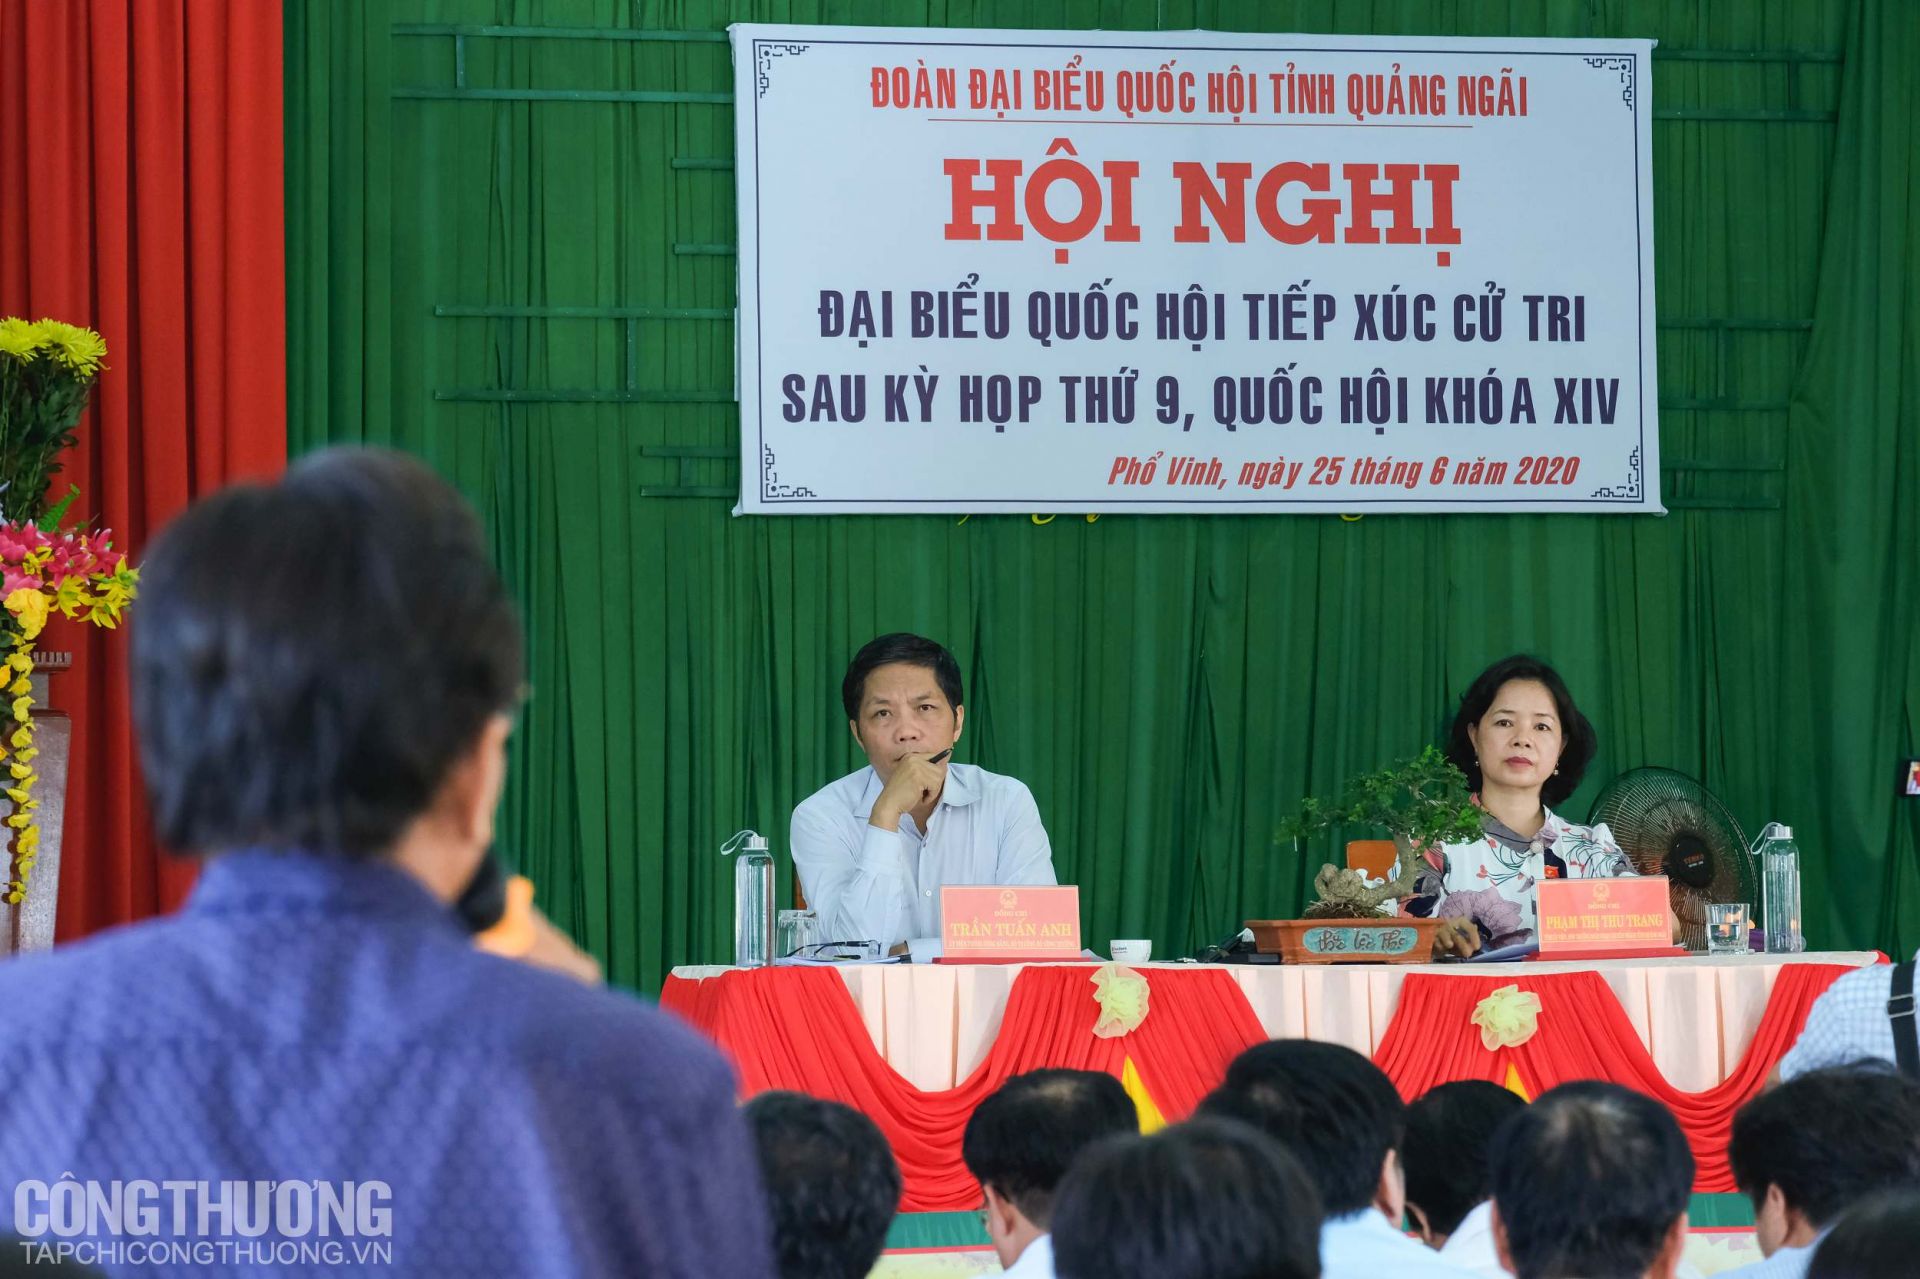 Đại diện Đoàn ĐBQH tỉnh Quảng Ngãi lắng nghe các kiến nghị của cử tri